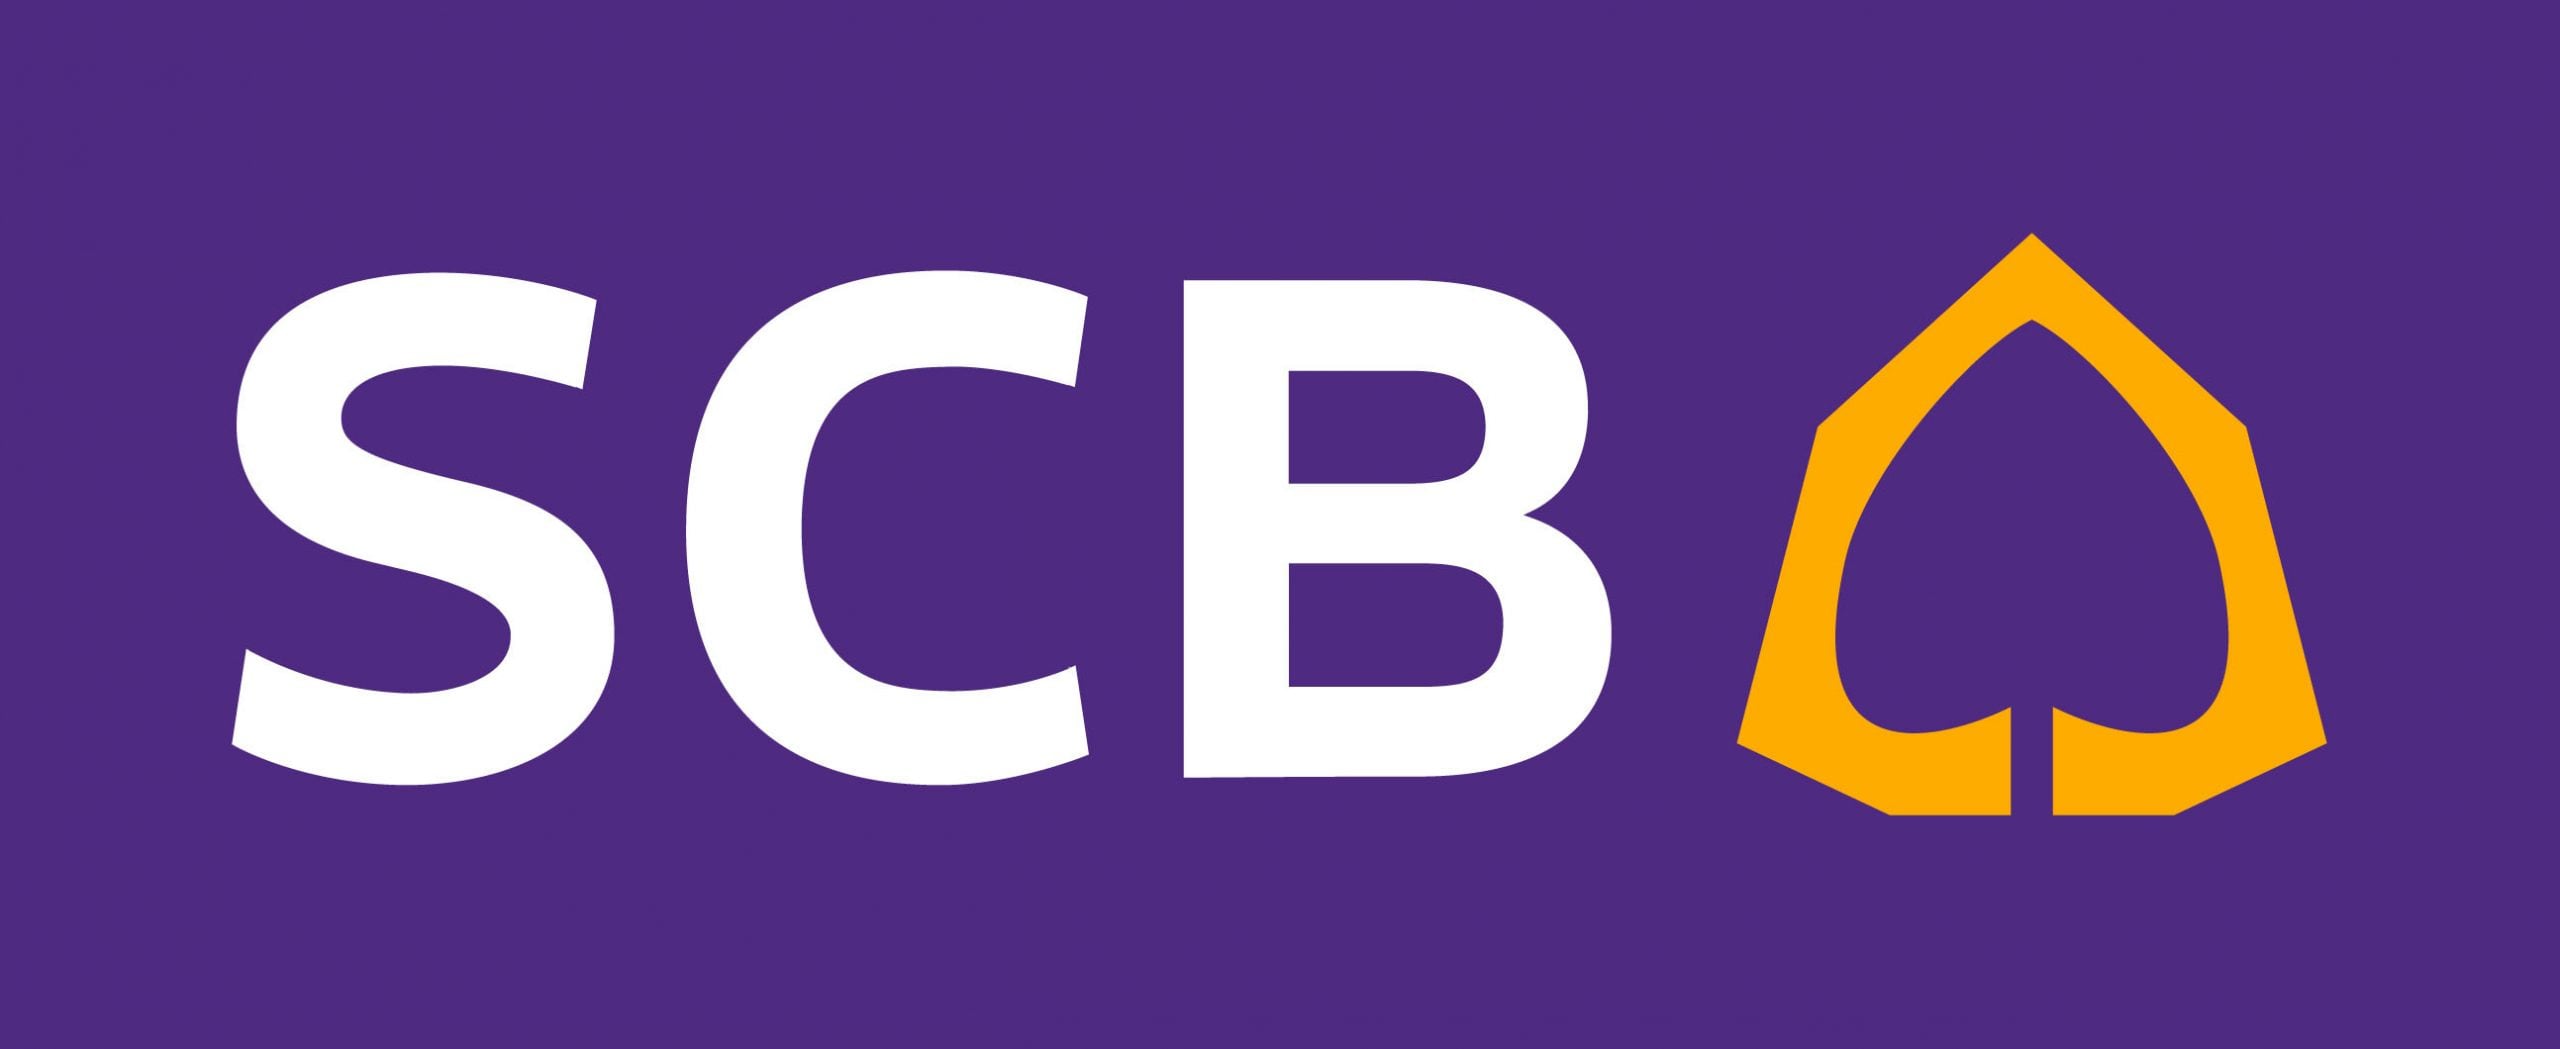 scb logo